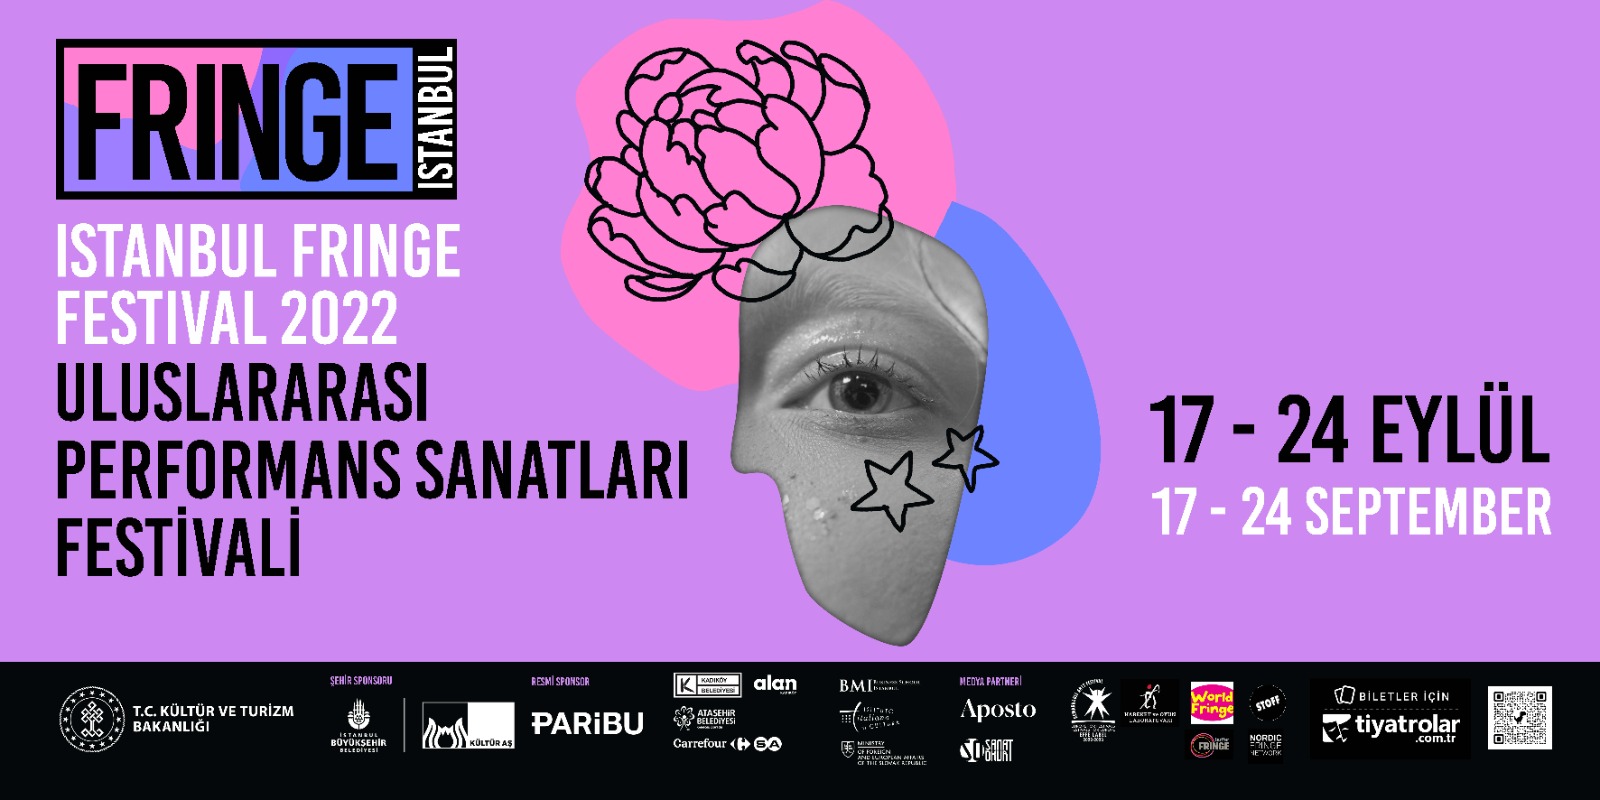 Istanbul Fringe Festival on X: Istanbul Fringe Festival Mekânları #7:  Dasdas! Istanbul Fringe Festival Venues #7: Dasdas! @dasdasistanbul   / X